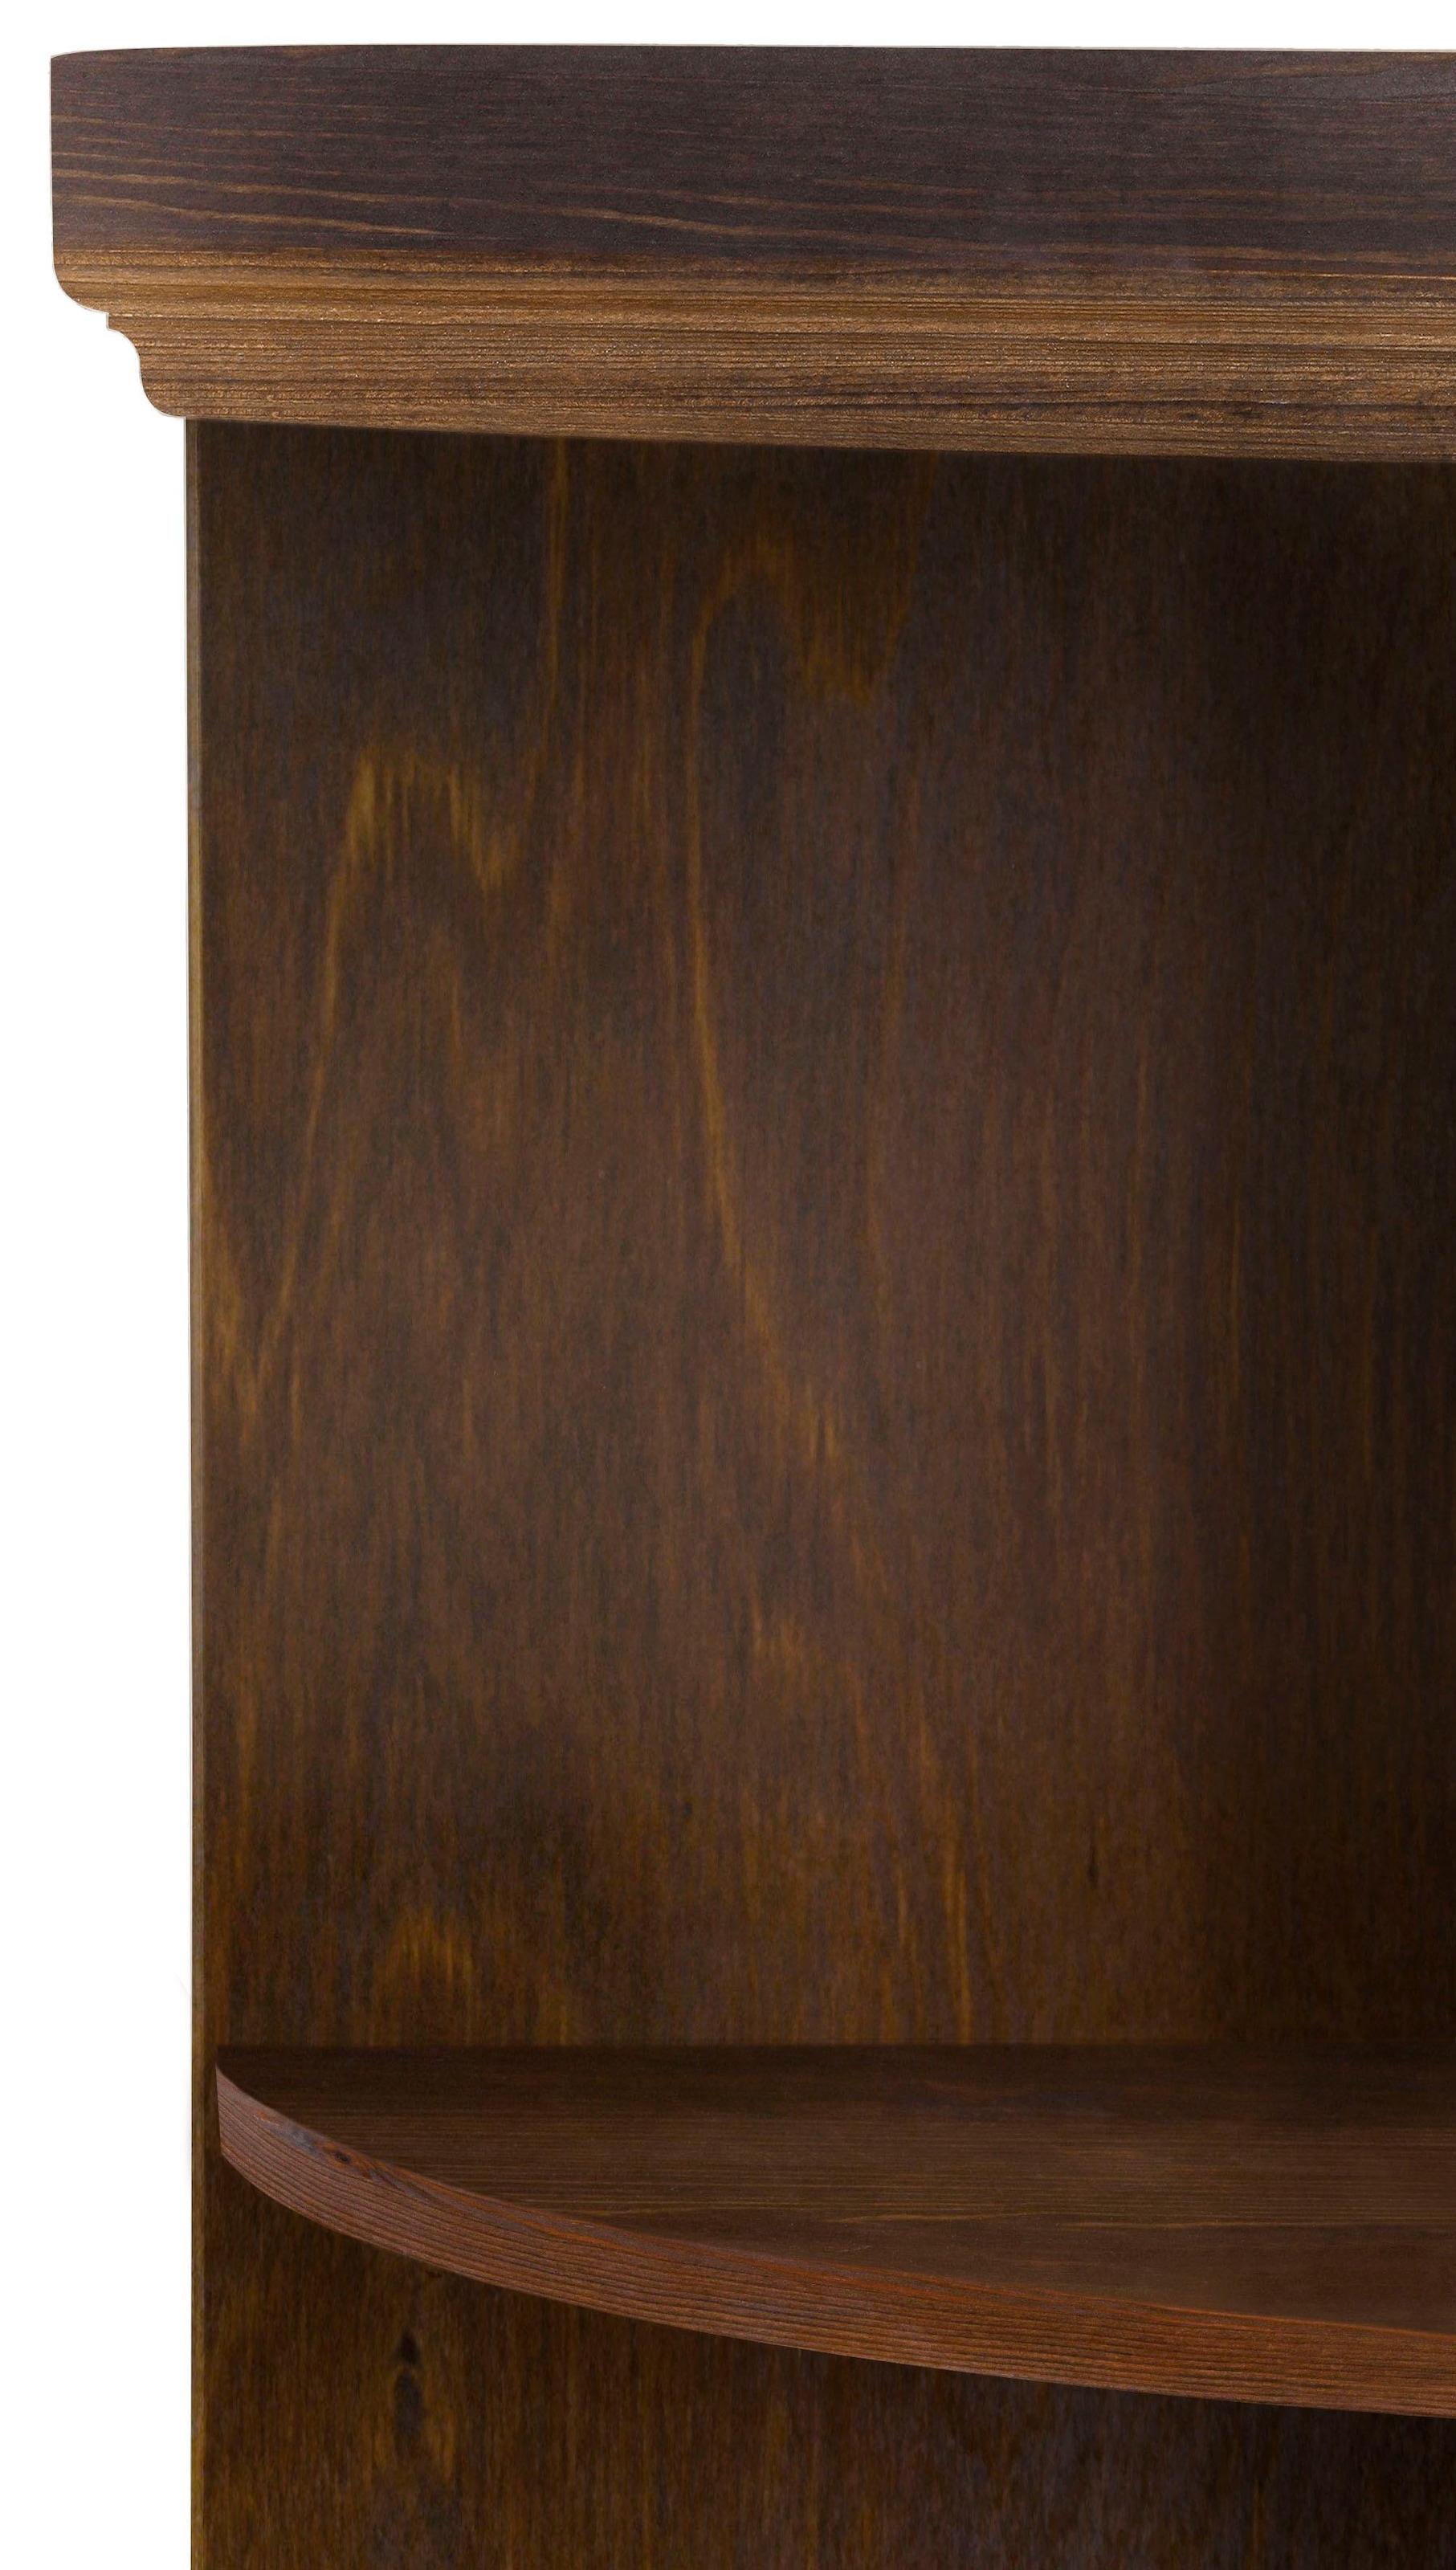 Home affaire Anbauregal »Soeren«, aus massiver Kiefer, Höhe 220 cm, Tiefe 29 cm